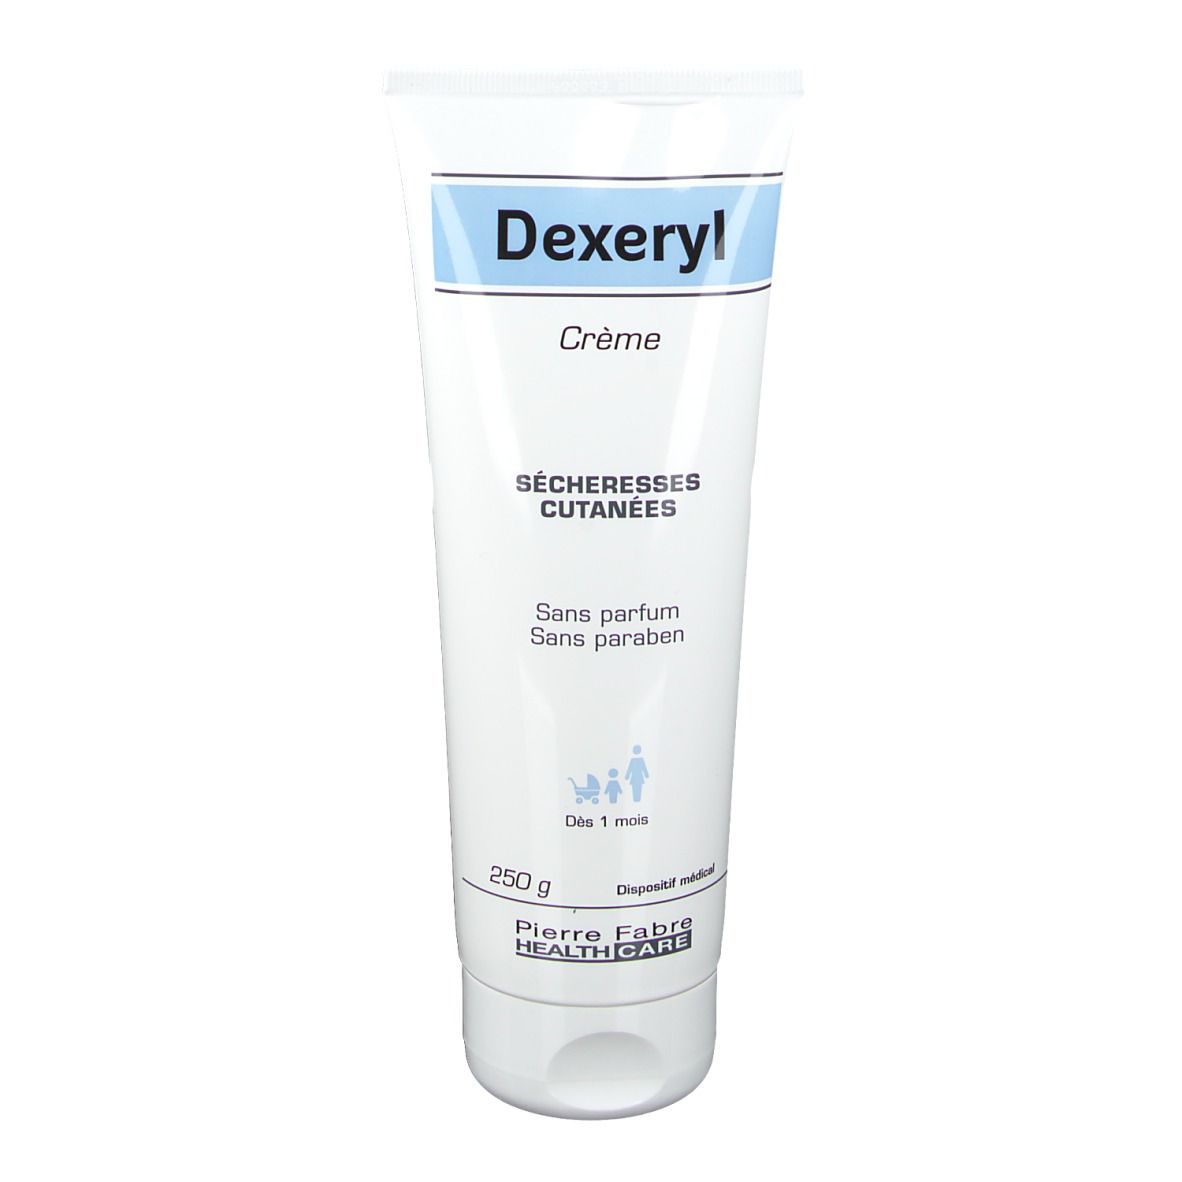 Dexeryl Crème Sécheresse Cutanée, Dispositif médical, crème pour application locale, tube